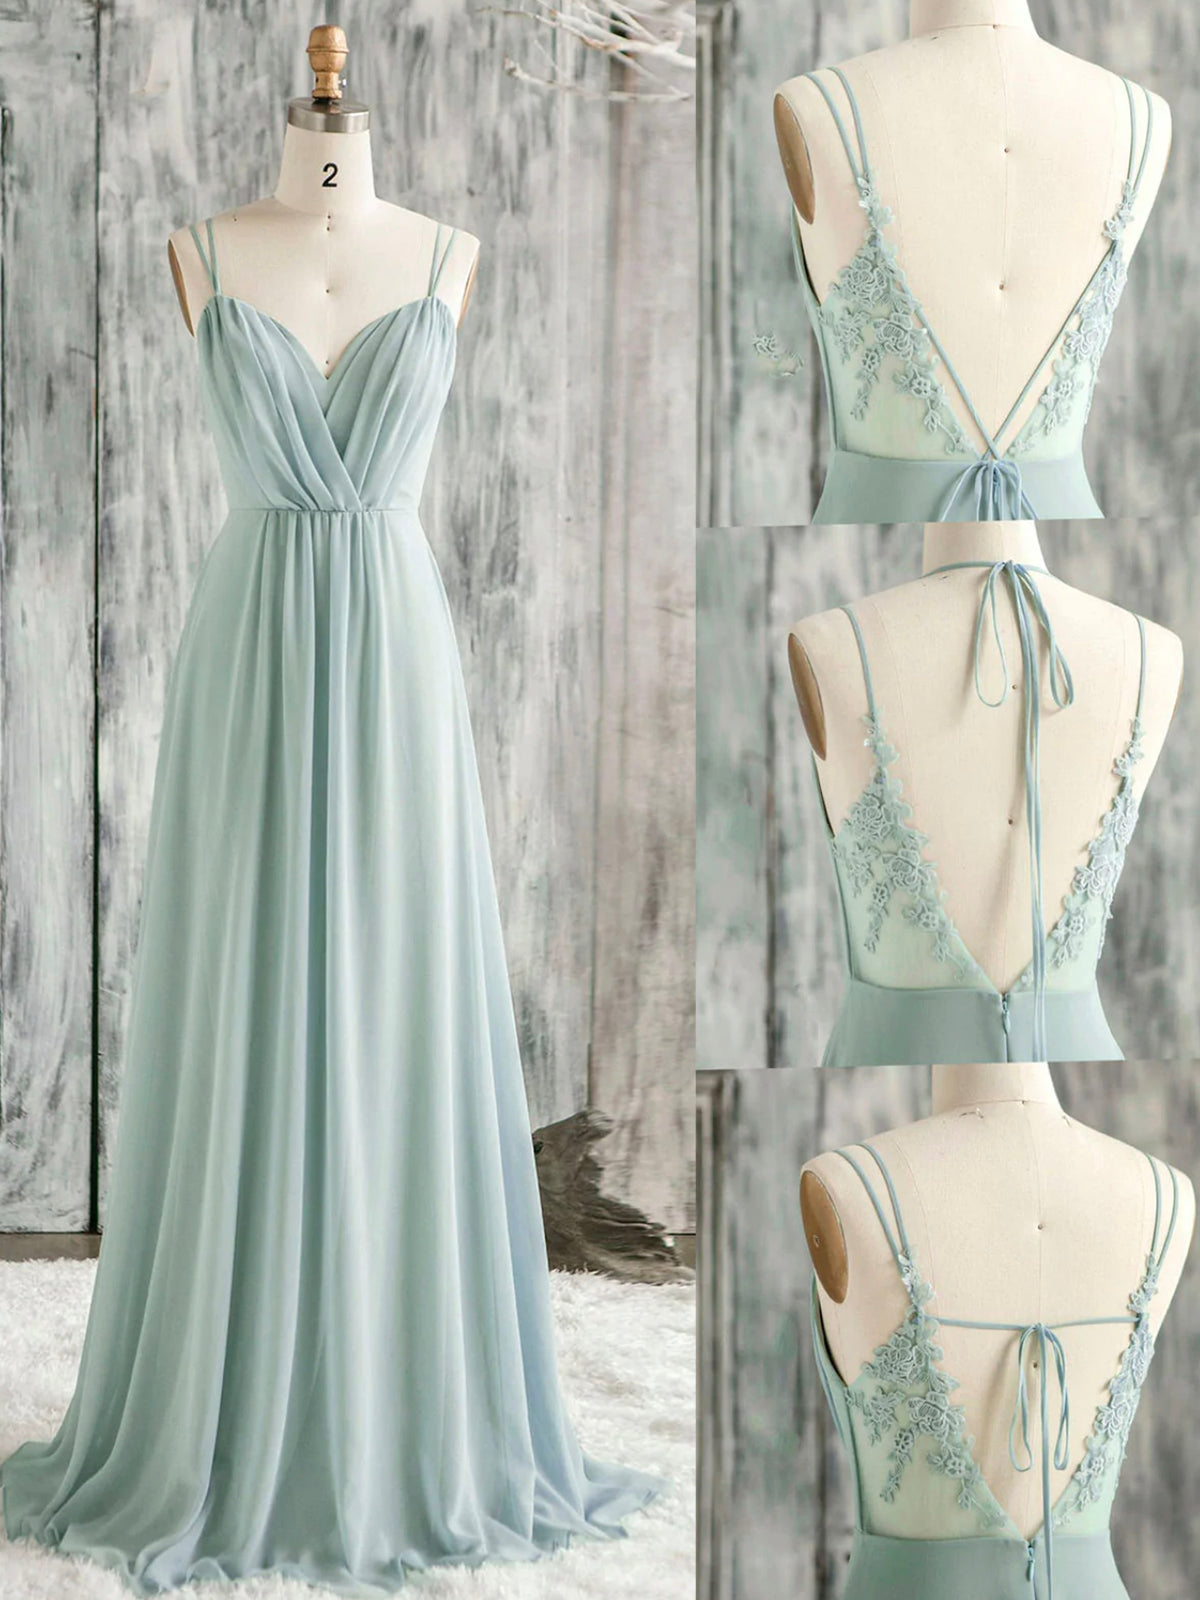 Prom Dress Patterns, A-Line Spaghetti Strap Chiffon and Lace Long Prom Dress